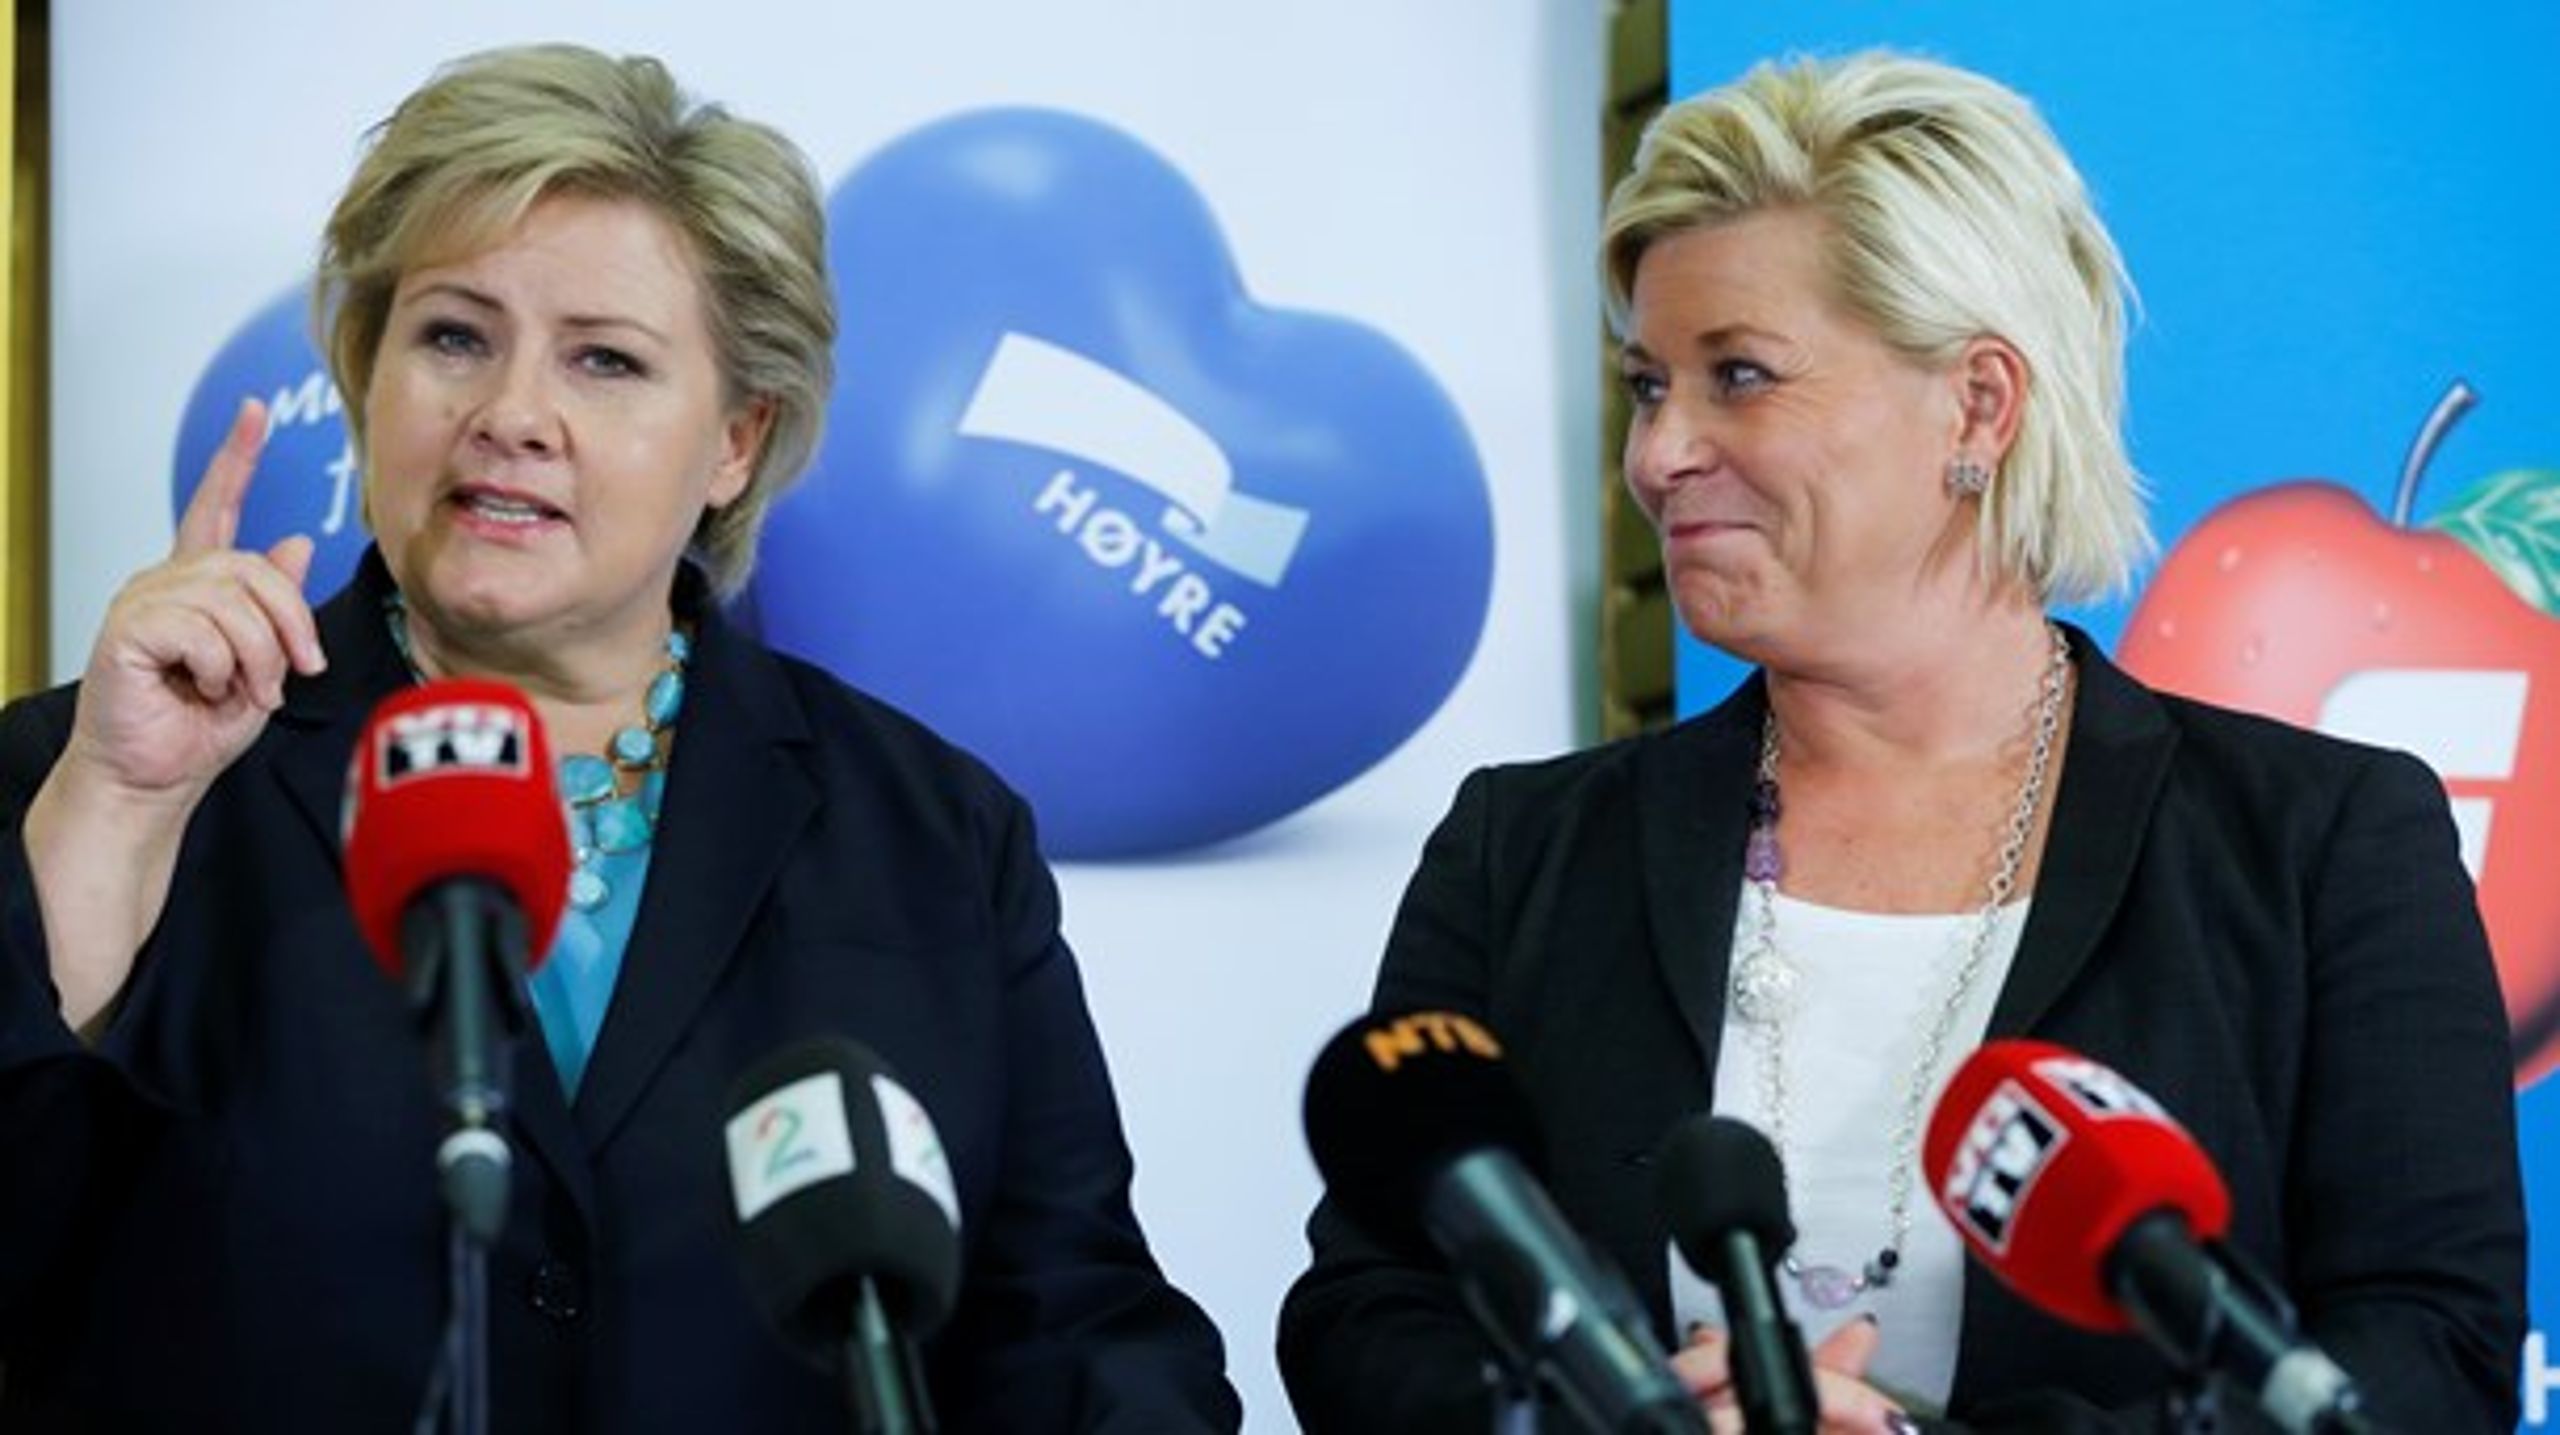 Høyres Erna Solberg og Fremskridtspartiets Siv Jensen, da de vandt regeringsmagten i 2013. Målingerne i Norge peger på regeringsskifte, men kampen bliver tæt.&nbsp;